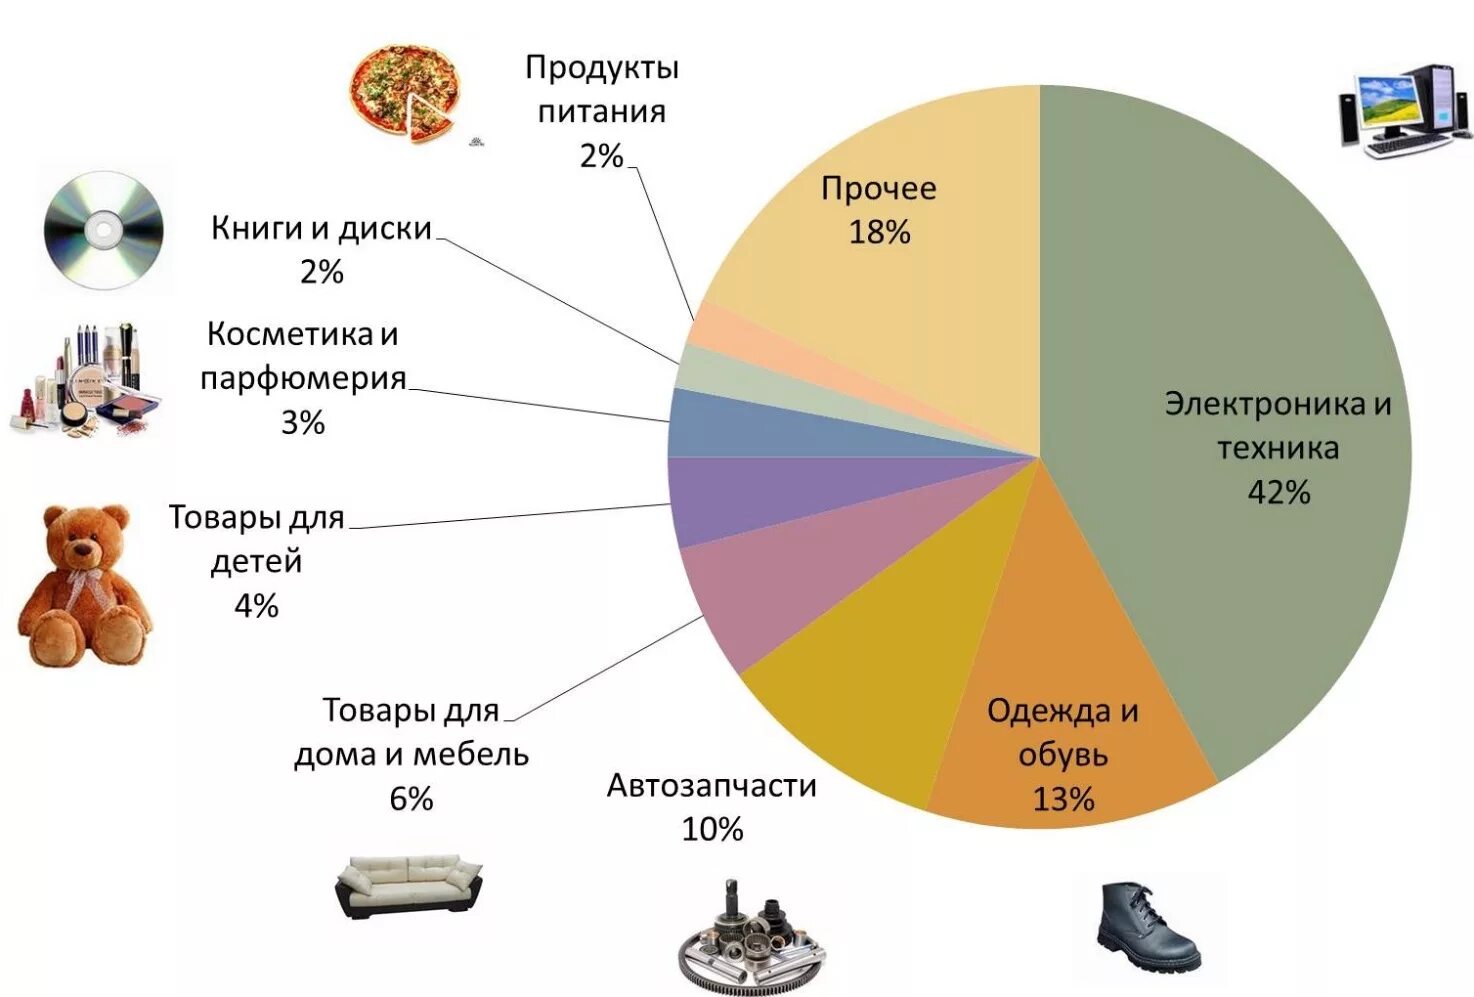 Категории товаров в магазине одежды. Интернет торговля в России. Интернет торговля статистика. Самые продаваемые товары. Структура интернет торговли.